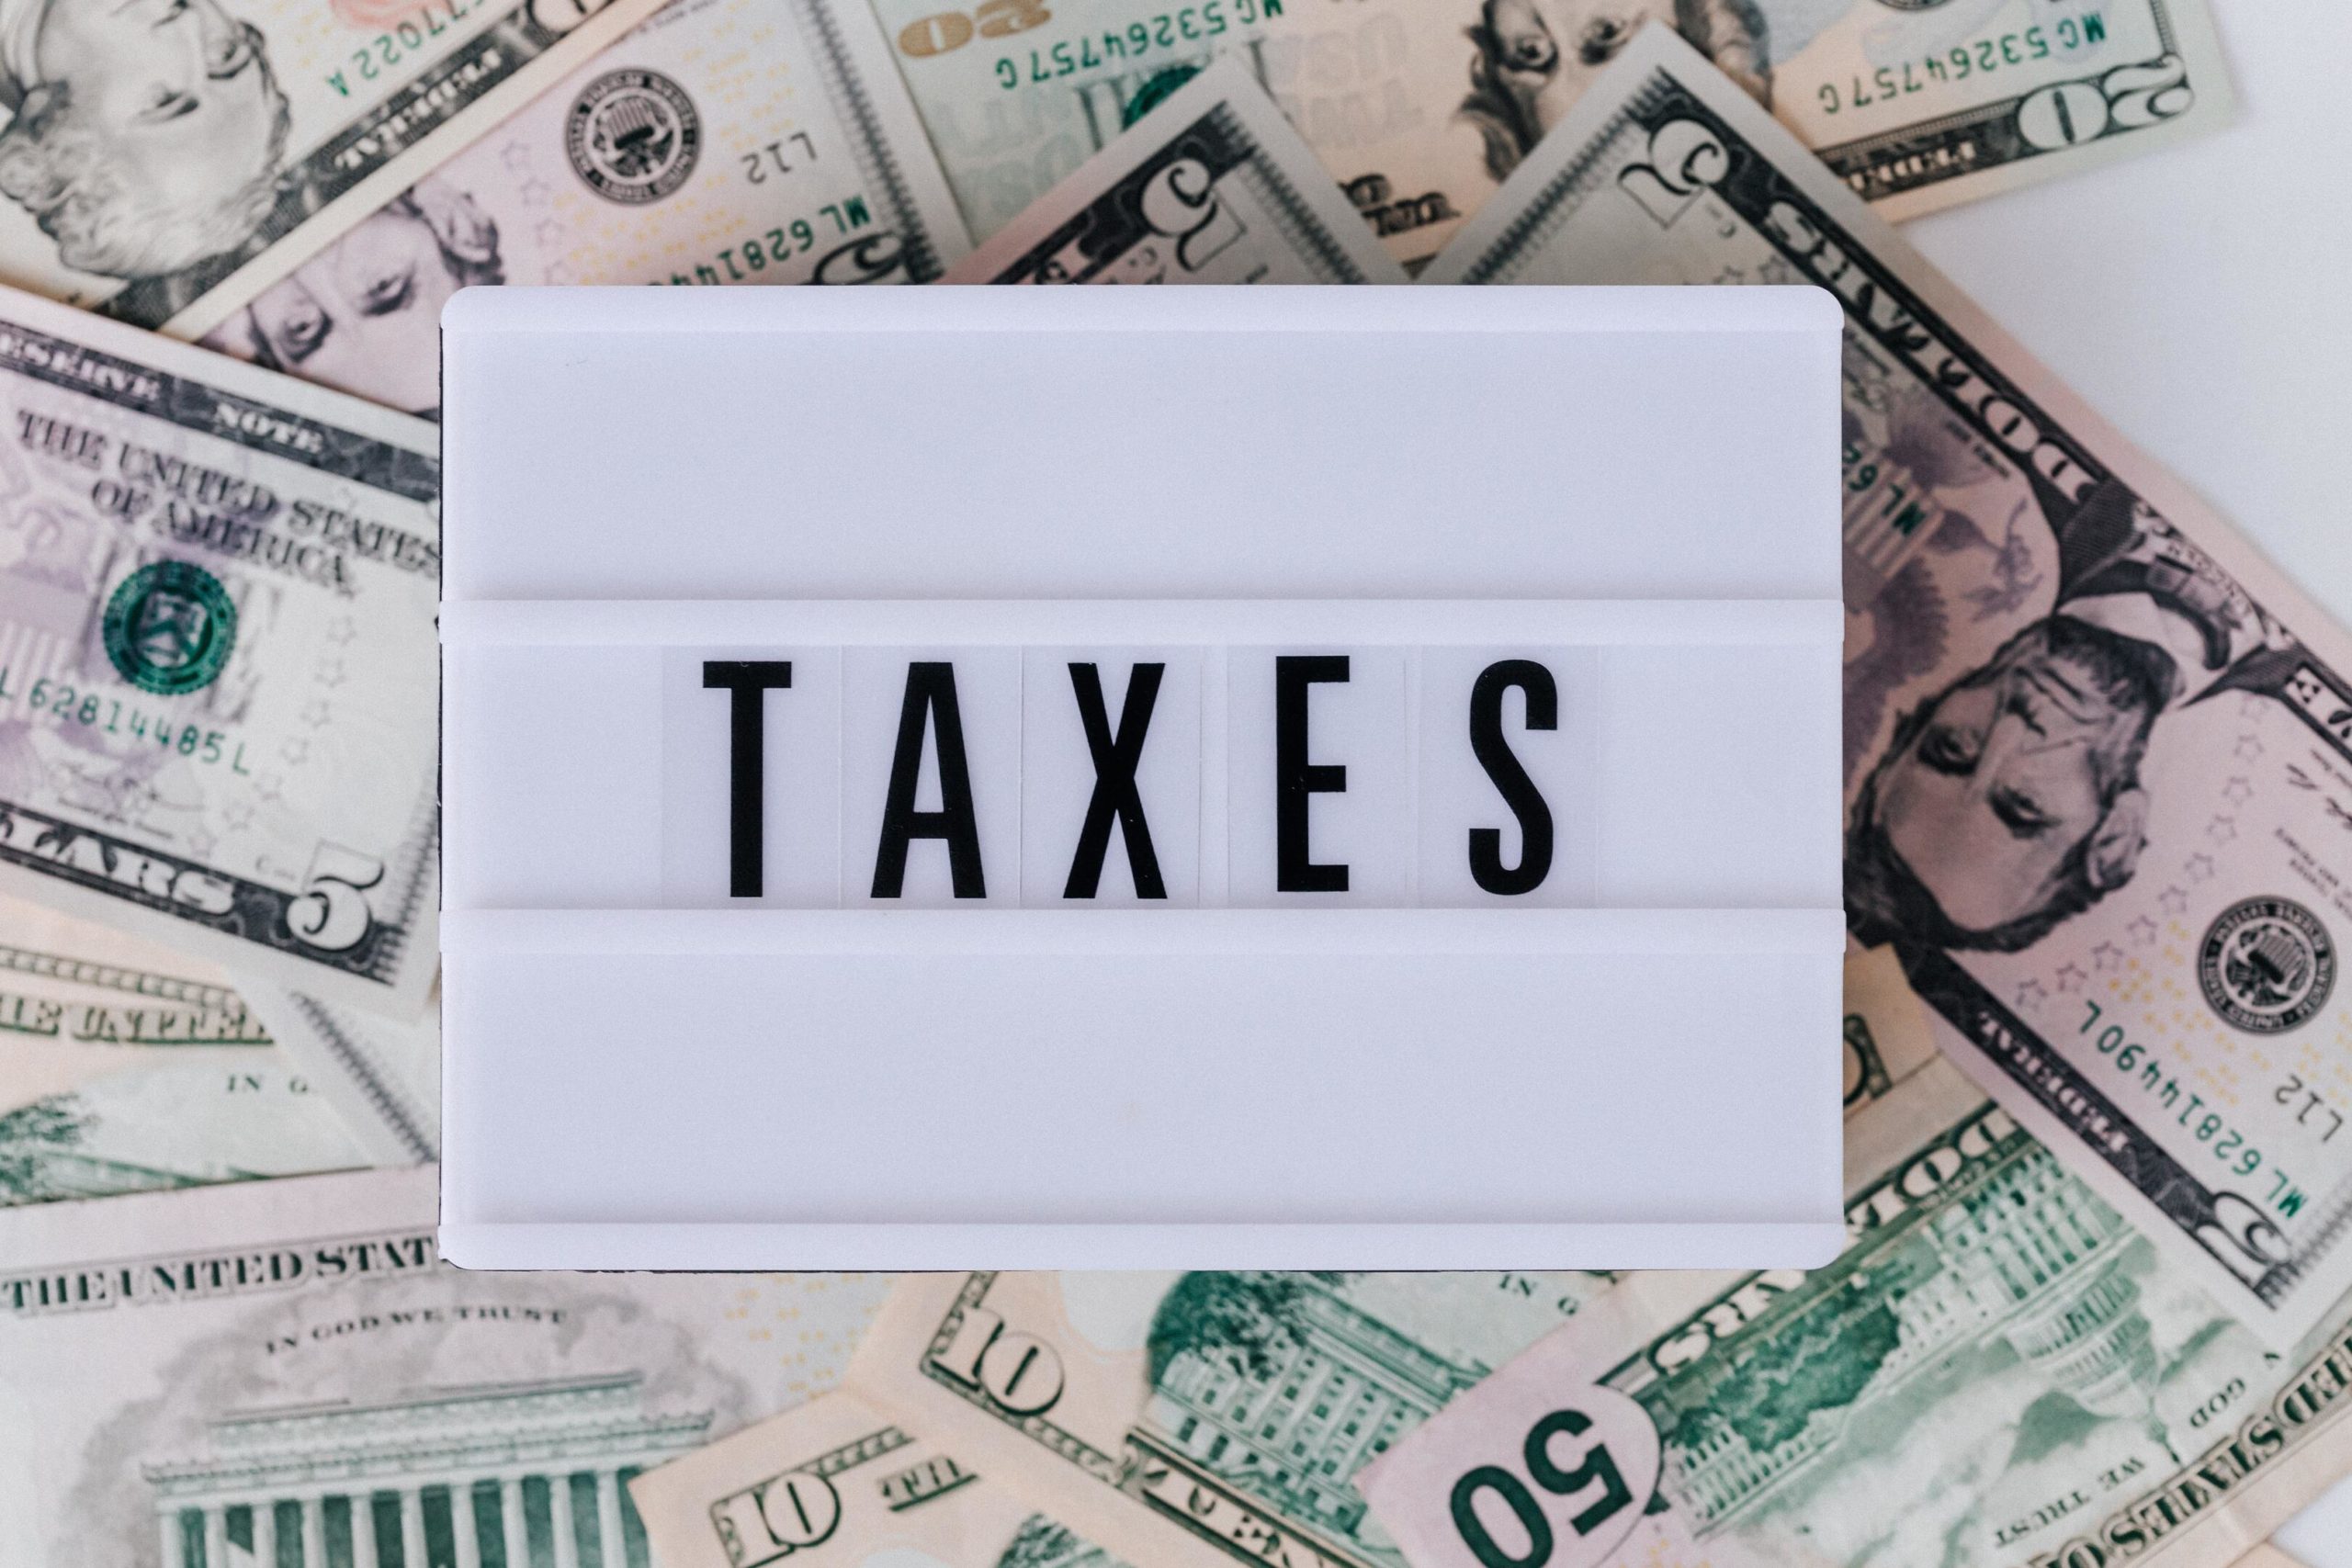  Ketahui Perbedaan Tax Planning dan Tax Evasion Sebelum Memulai Usaha